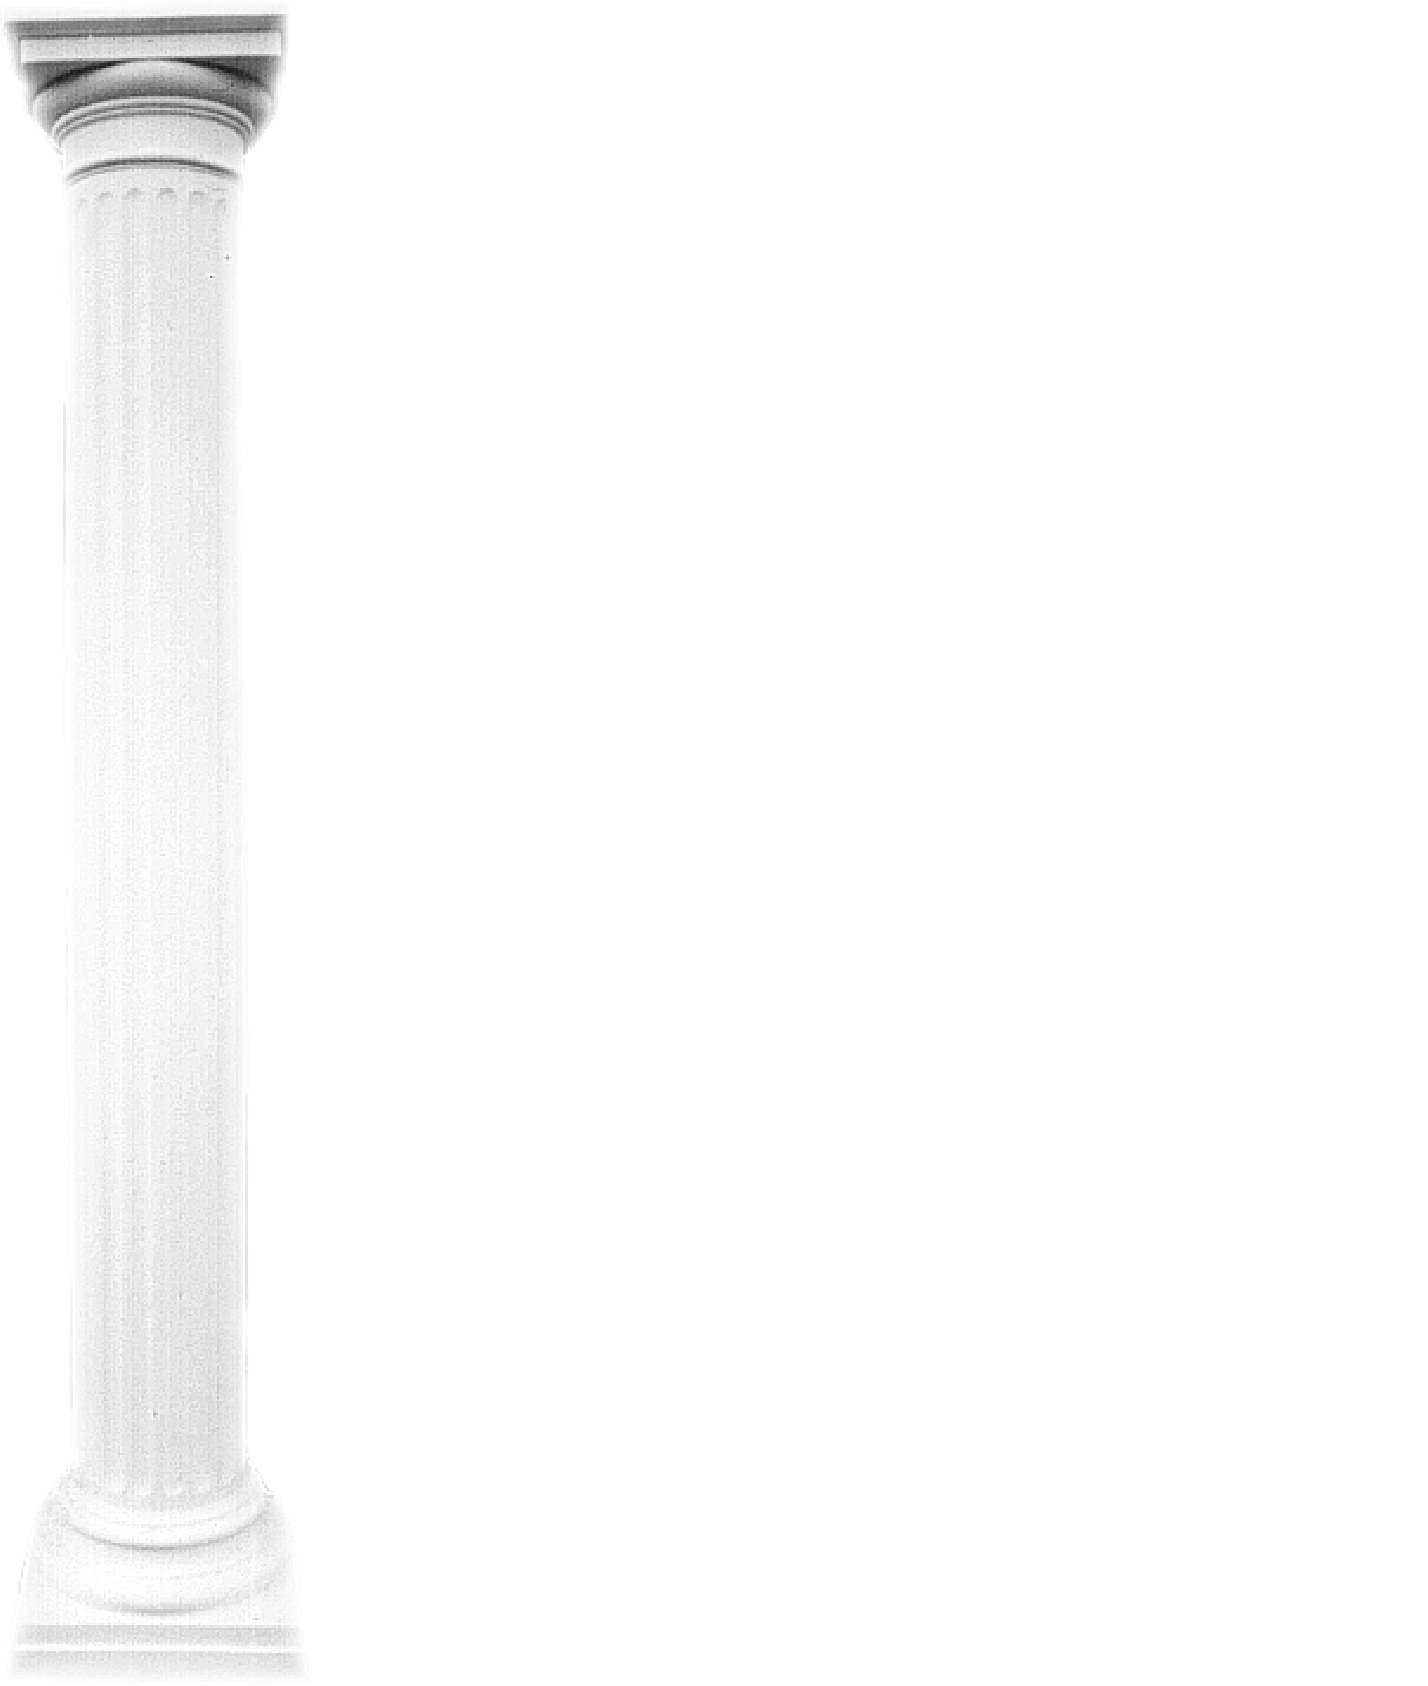 XXL Griechische Säule Antik Stil Design Luxus Säulen Stützen Neu 214cm